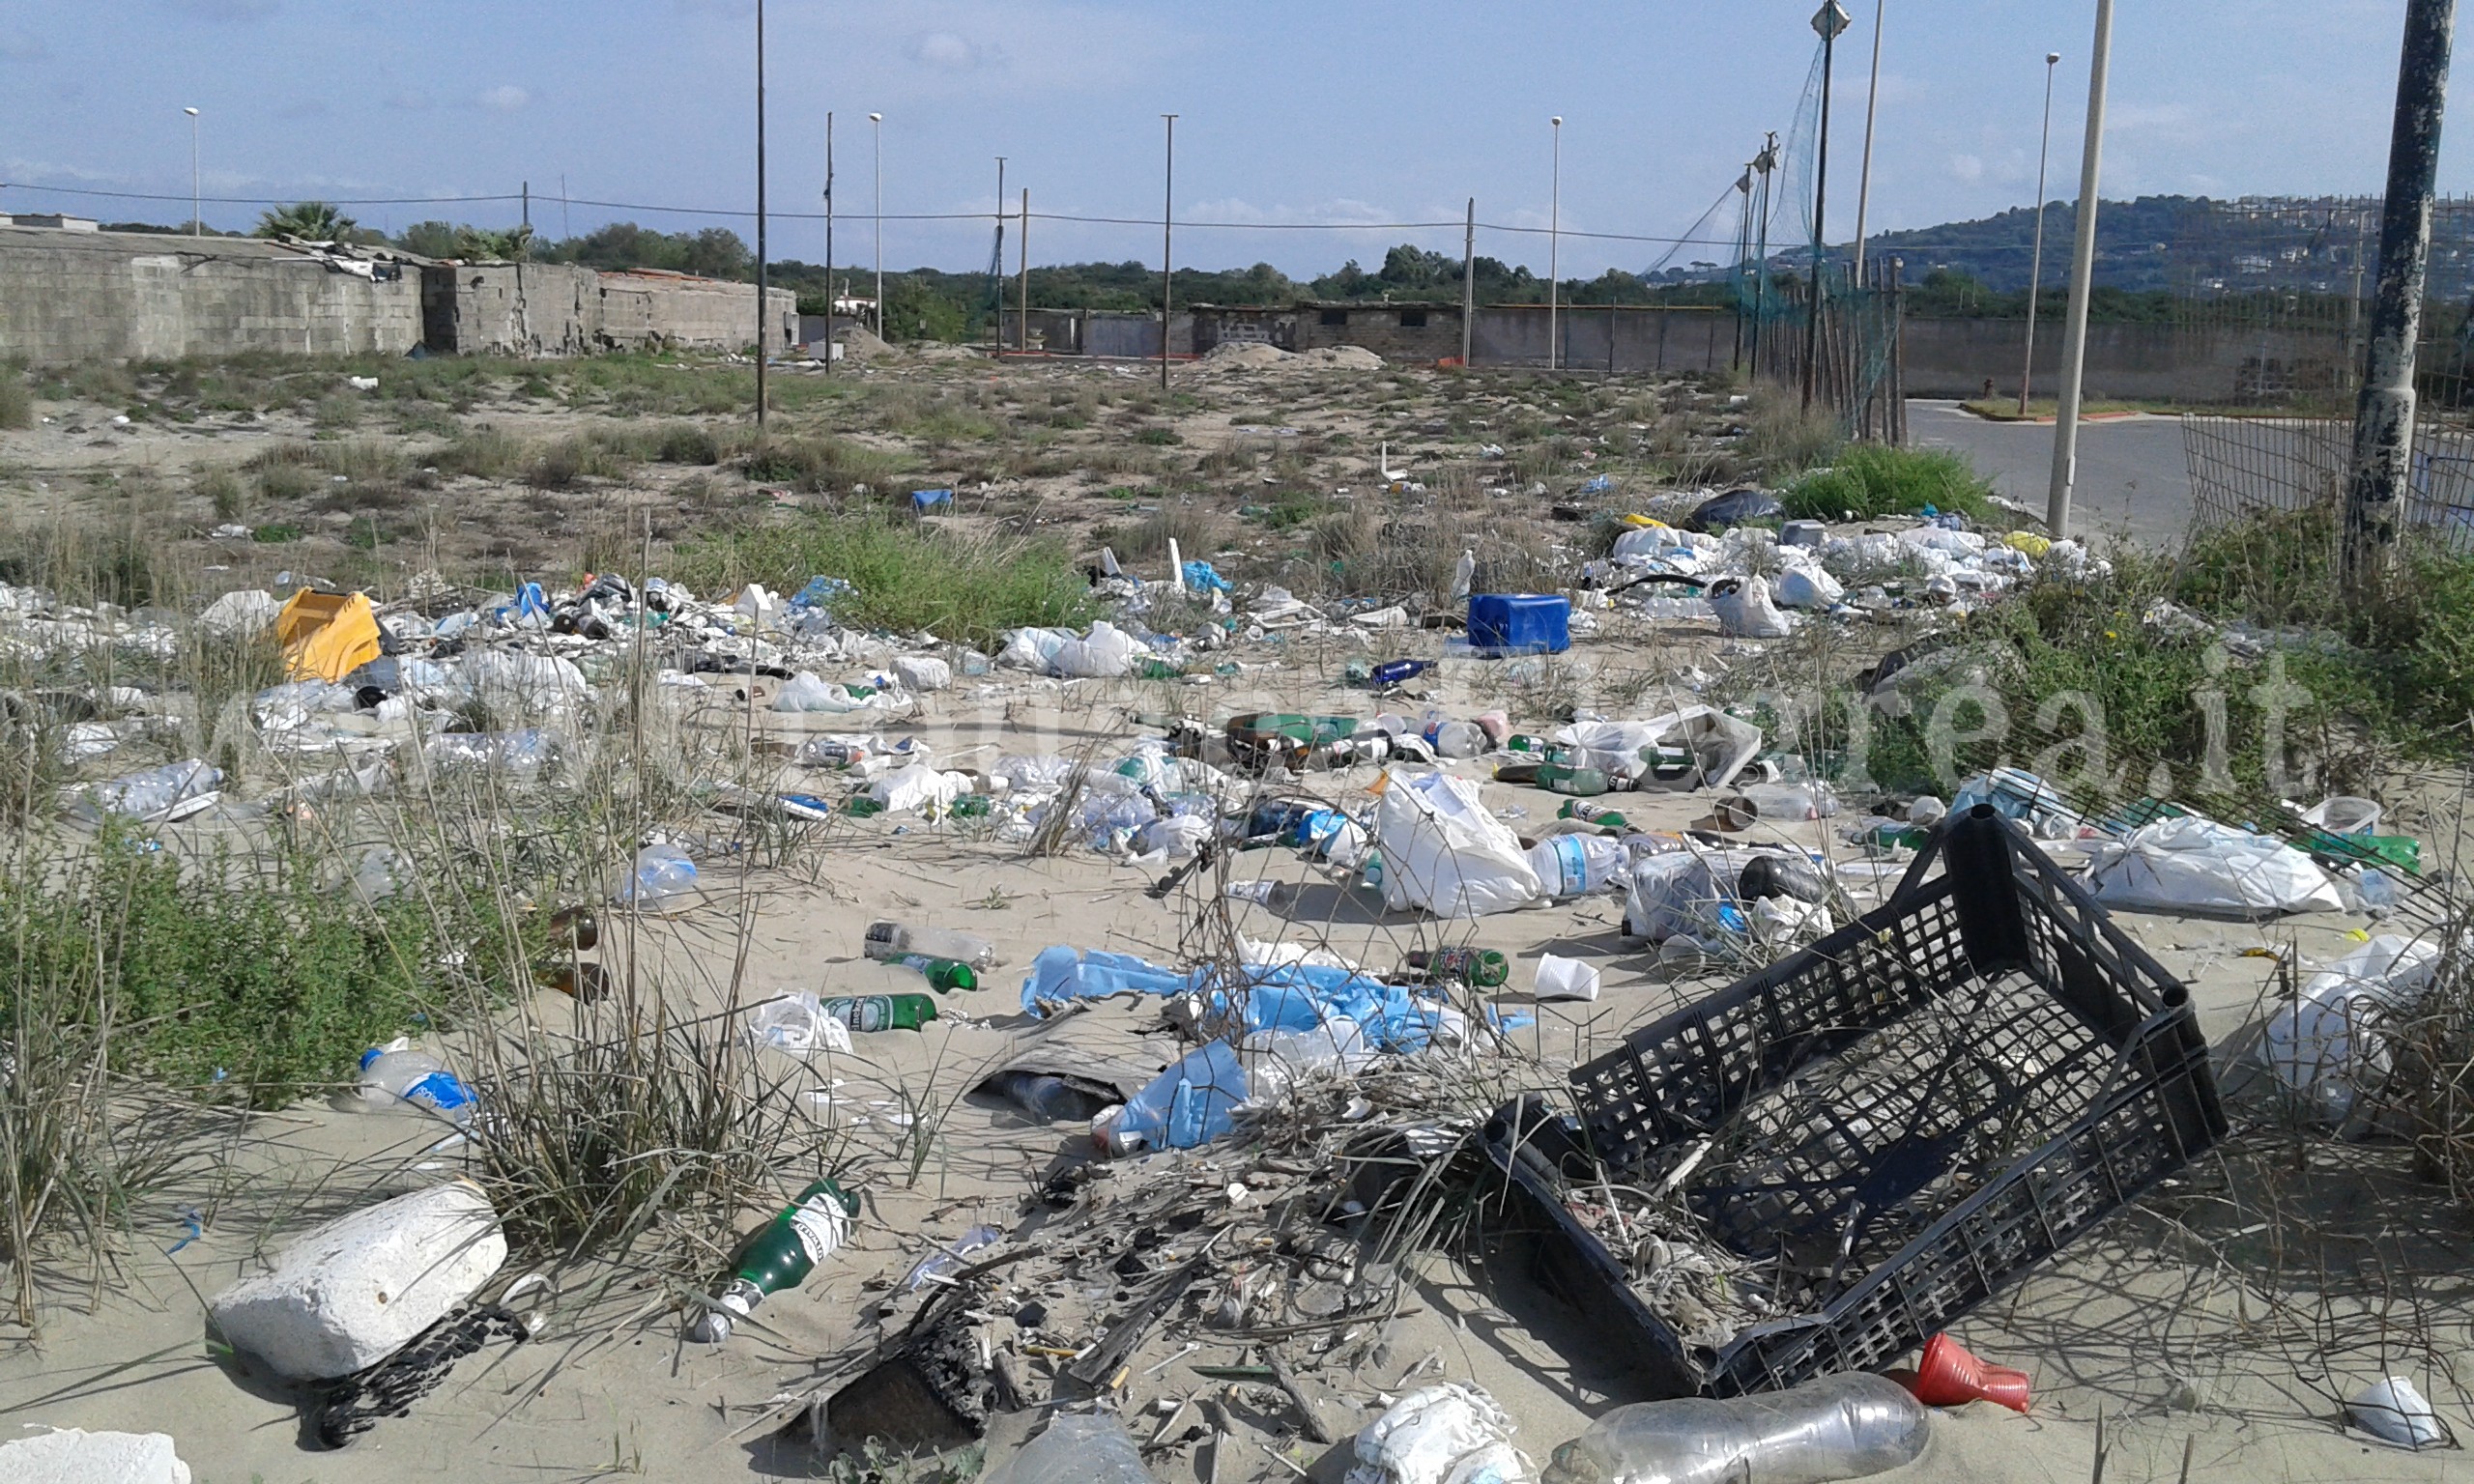 LICOLA/ Strade e spiagge invase dai rifiuti – LE FOTO